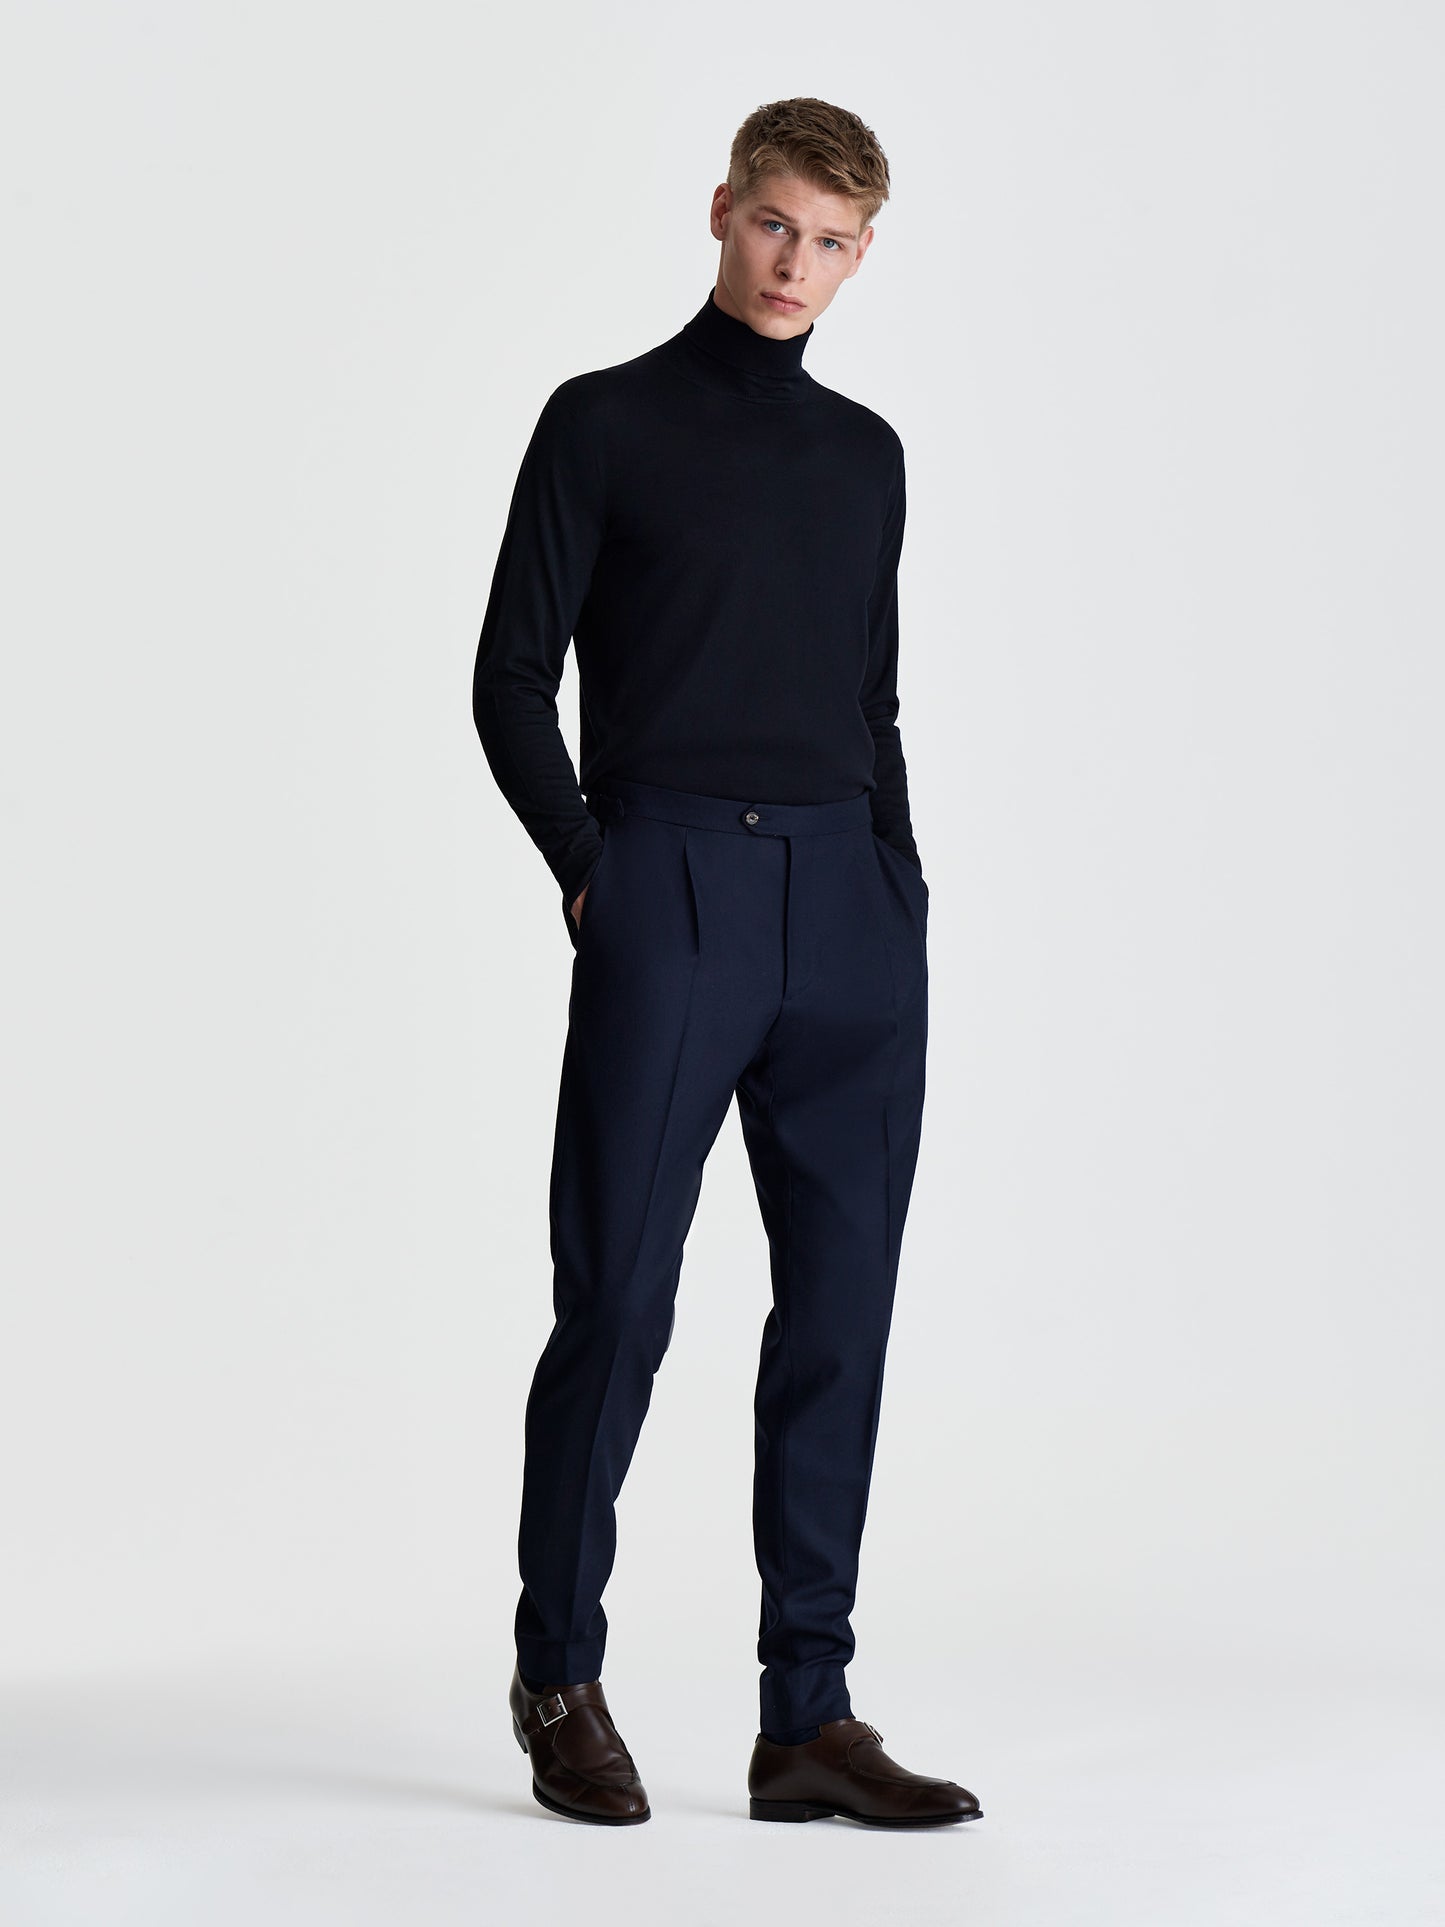 Merino Wool Extrafine Roll neck Sweater Navy Full Length Model Image